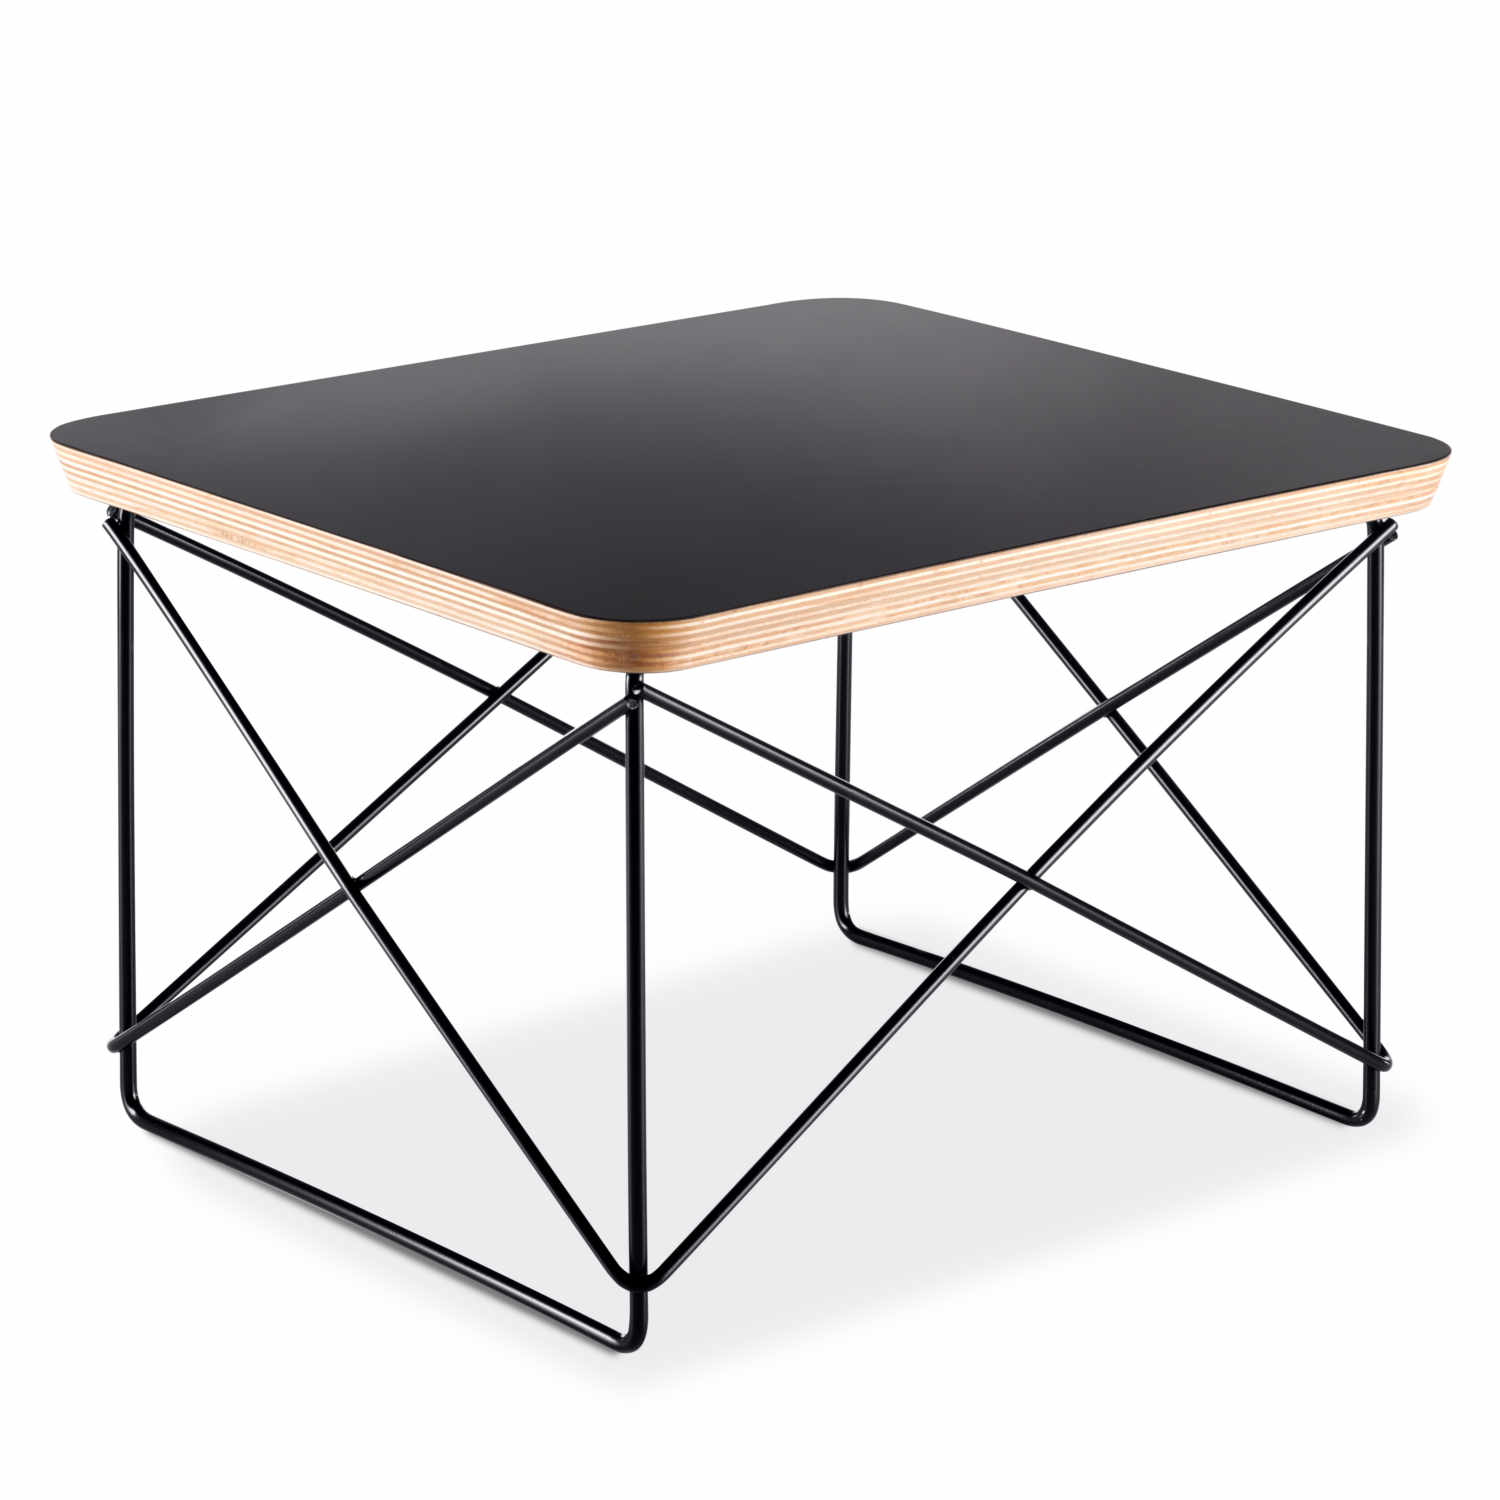 Occasional Table LTR Beistelltisch, Farbe schwarz, Drahtuntergestell basic dark pulverbeschichtet (glatt) von Vitra